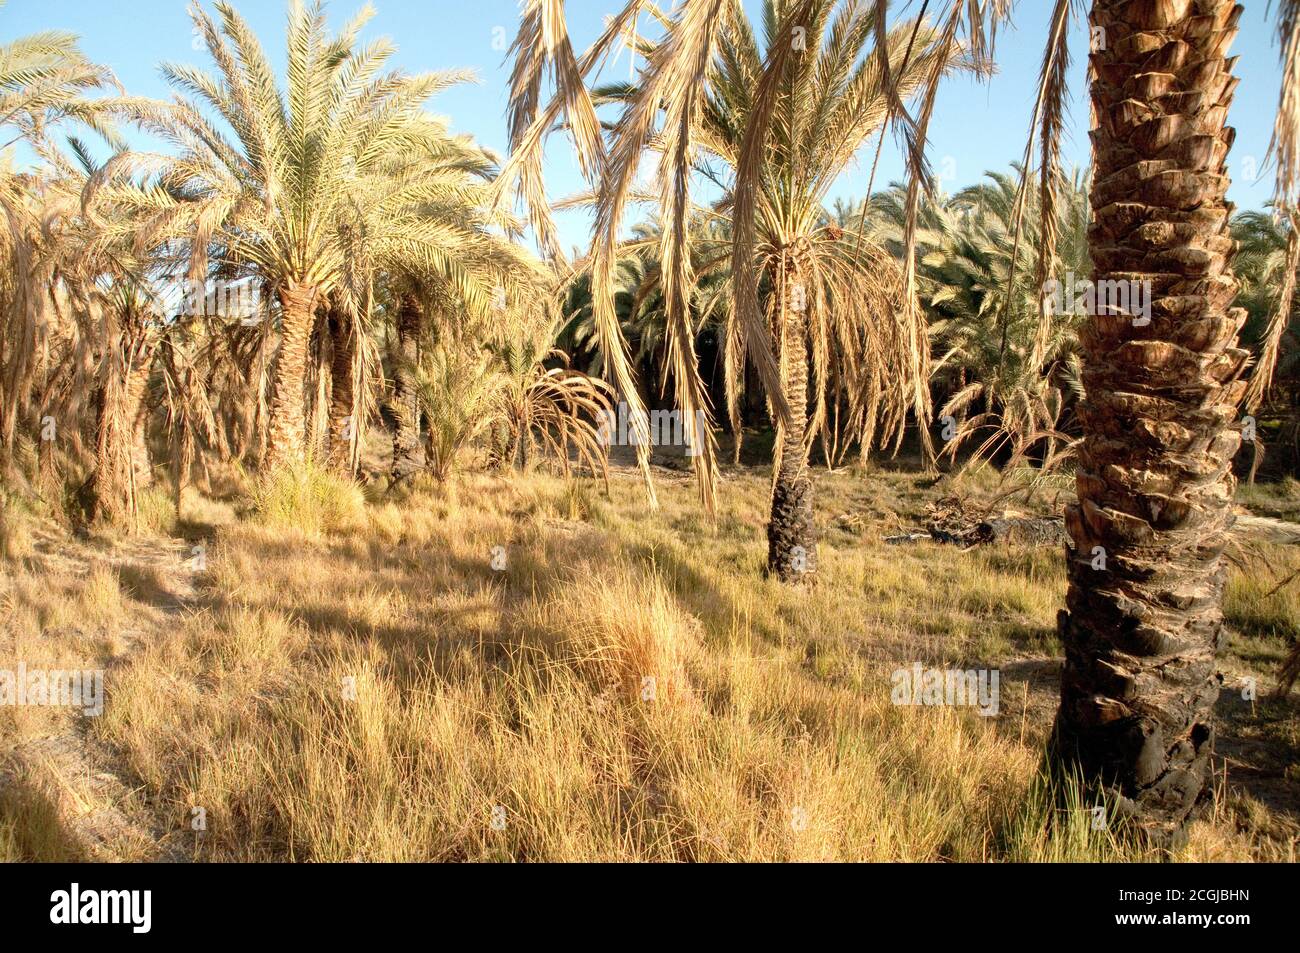 Une palmeraie de date dans une forêt de palmiers au bord d'une forêt de palmiers, dans l'oasis saharienne de Farafra, désert occidental, Egypte. Banque D'Images